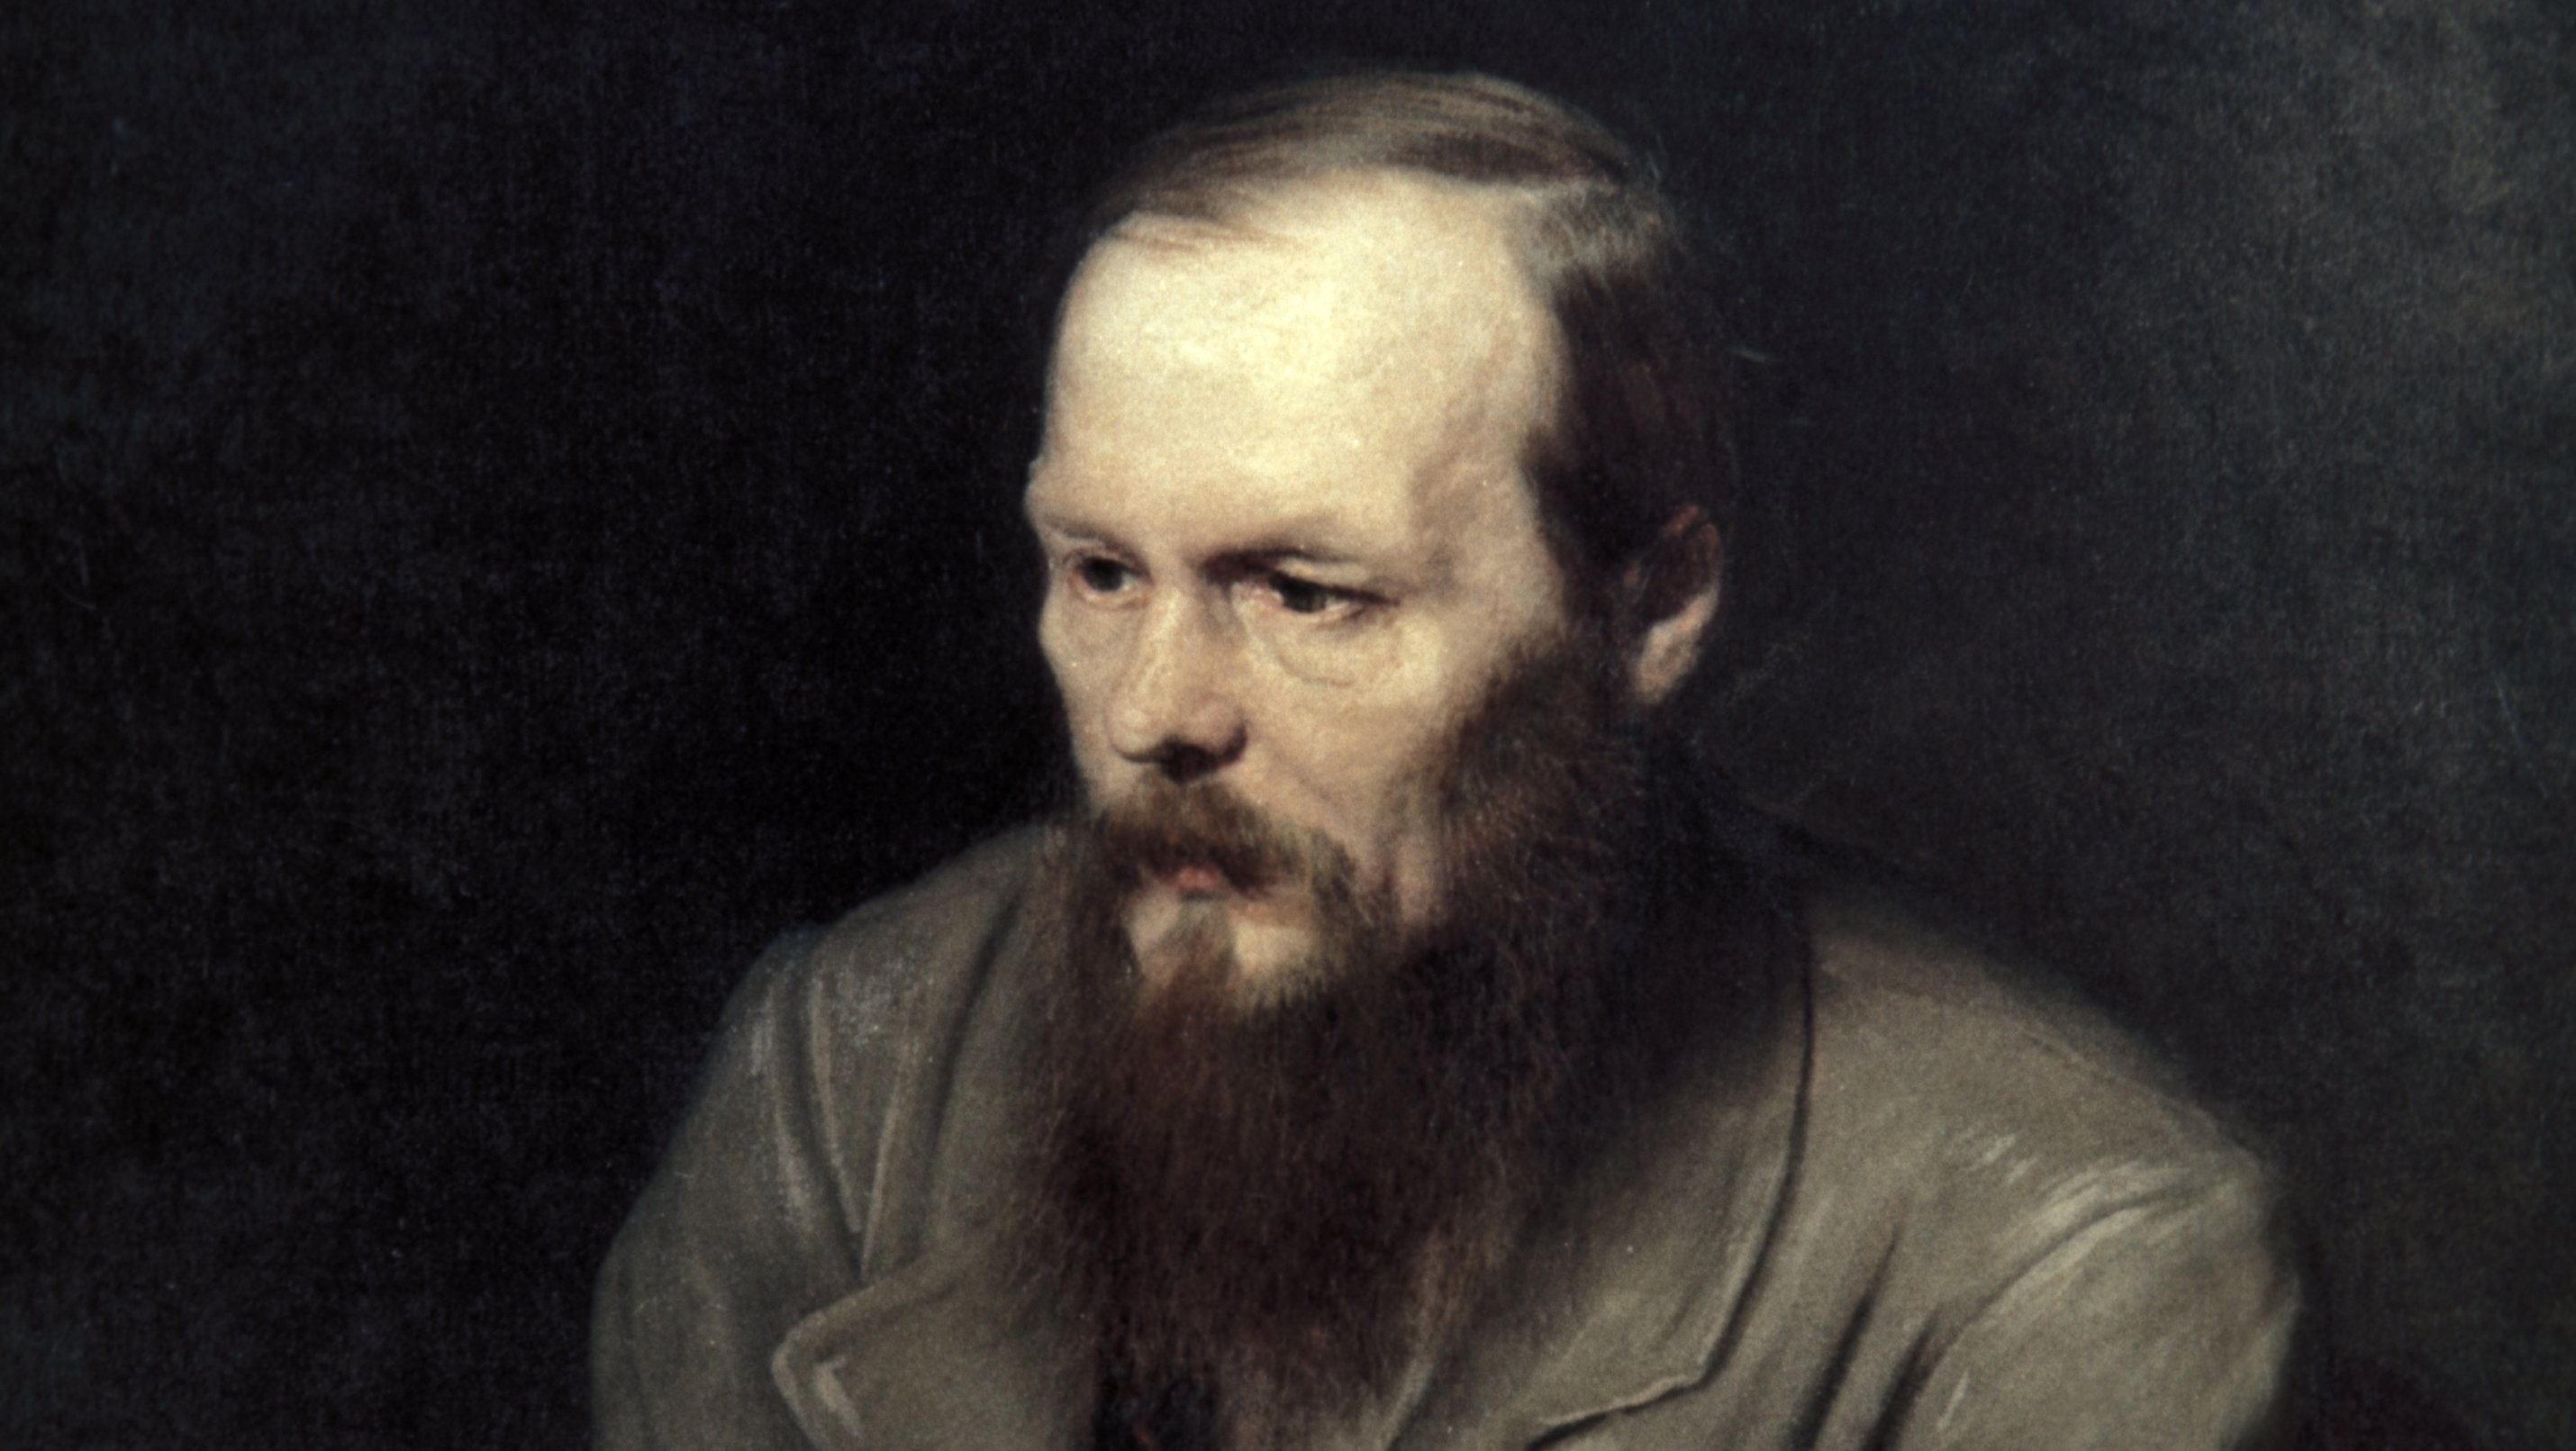 A portrait painting of writer fyodor dostoyevsky by vasily perov, 1872.